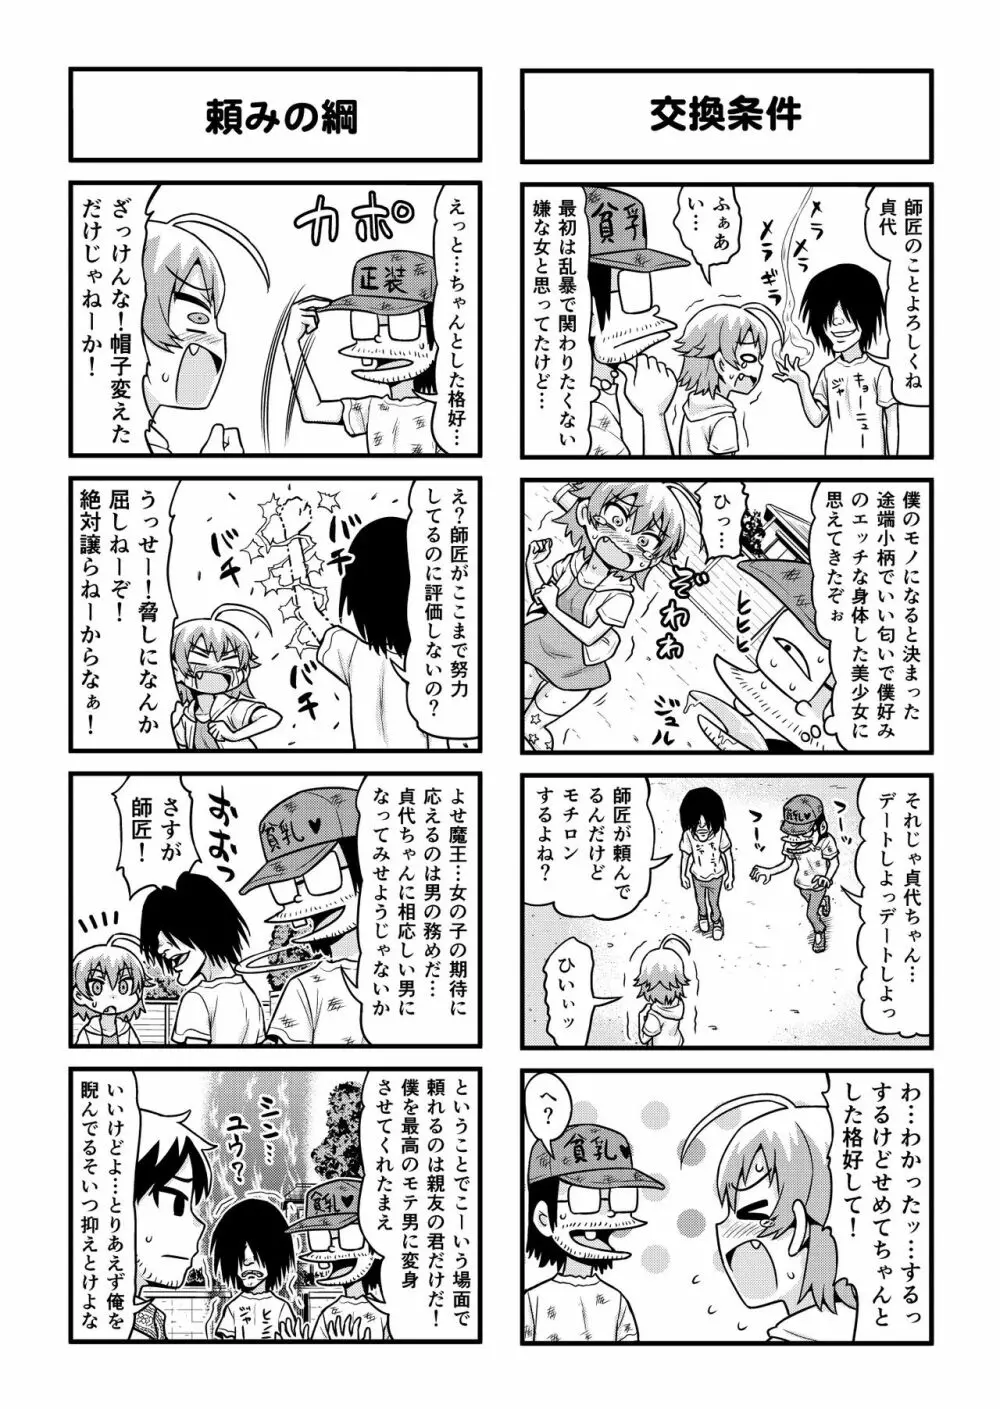 のんきBOY 1-36 - page277